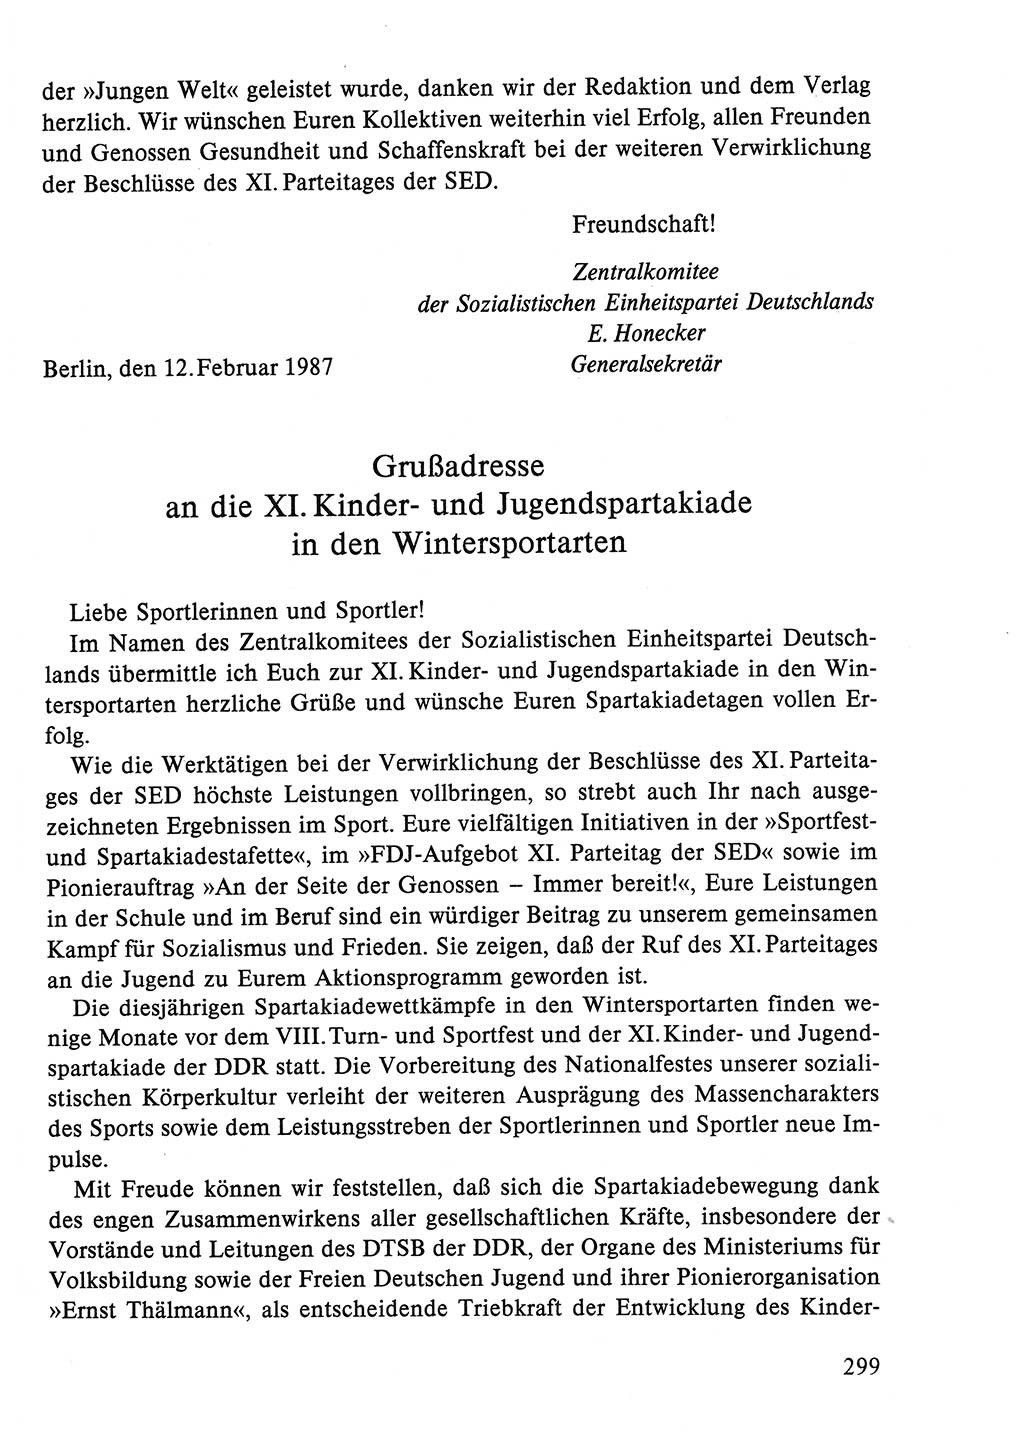 Dokumente der Sozialistischen Einheitspartei Deutschlands (SED) [Deutsche Demokratische Republik (DDR)] 1986-1987, Seite 299 (Dok. SED DDR 1986-1987, S. 299)